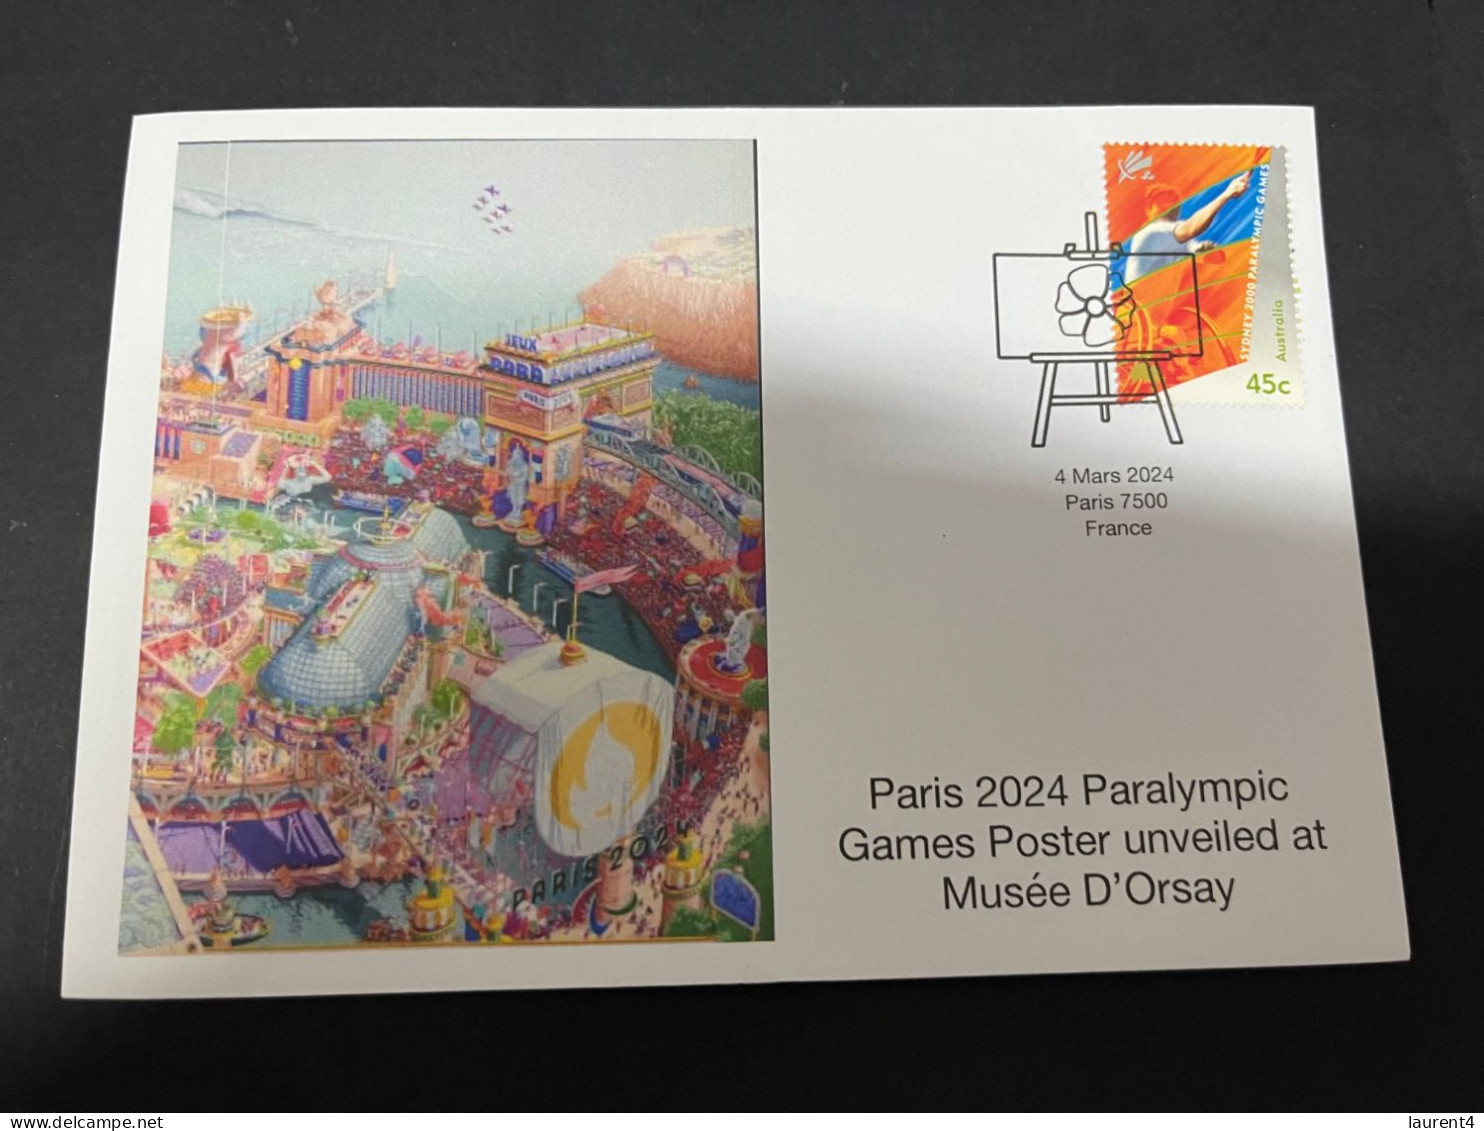 6-3-2024 (2 Y 17) Paris Olympic Games 2024 - 2 Olympic Games Posters Unveil At Musée D'Orsay (Paralympics) - Eté 2024 : Paris